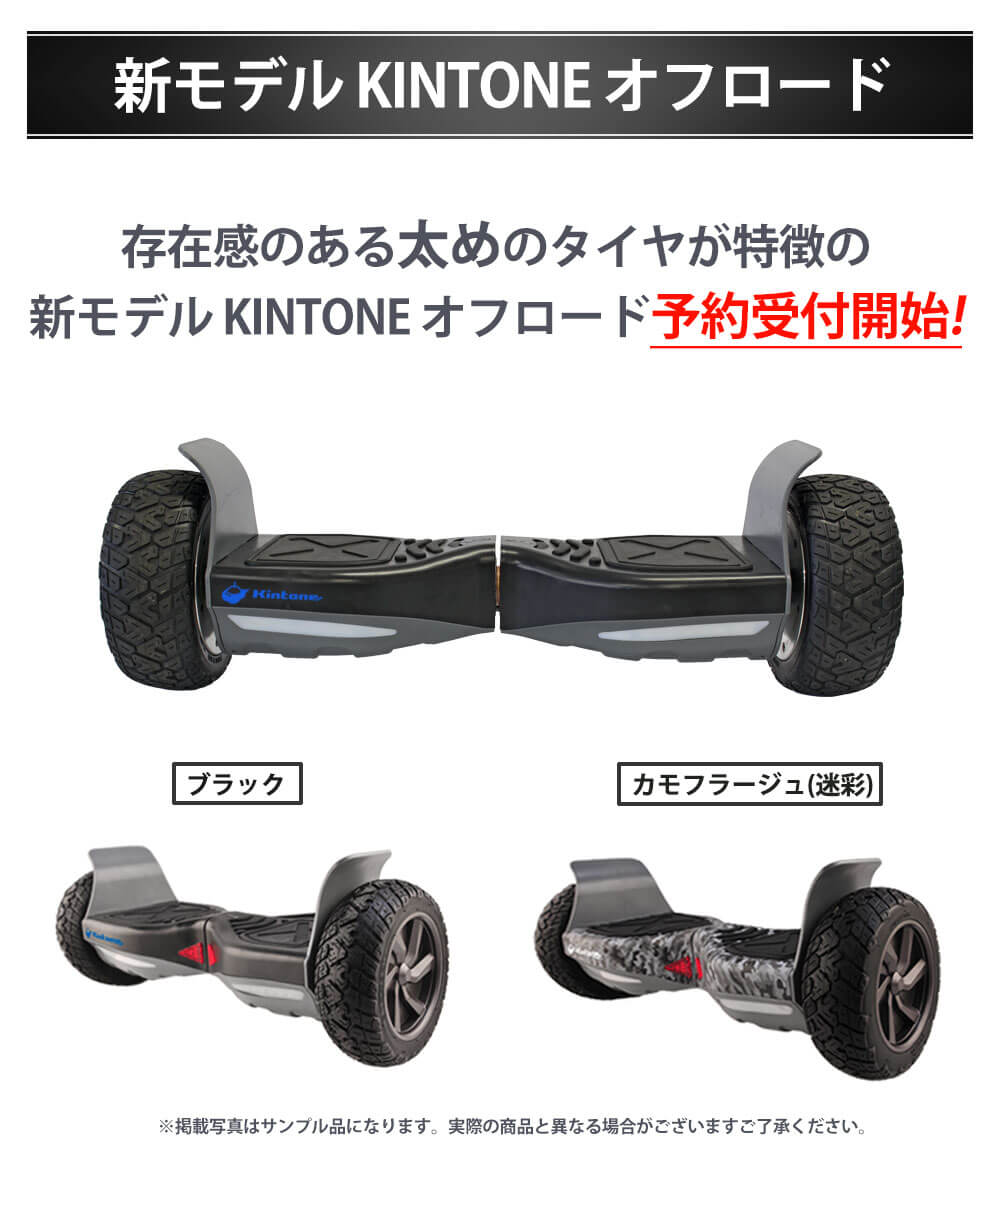 Kintone(キントーン)オフロードモデルの正規品を激安価格で購入できる 